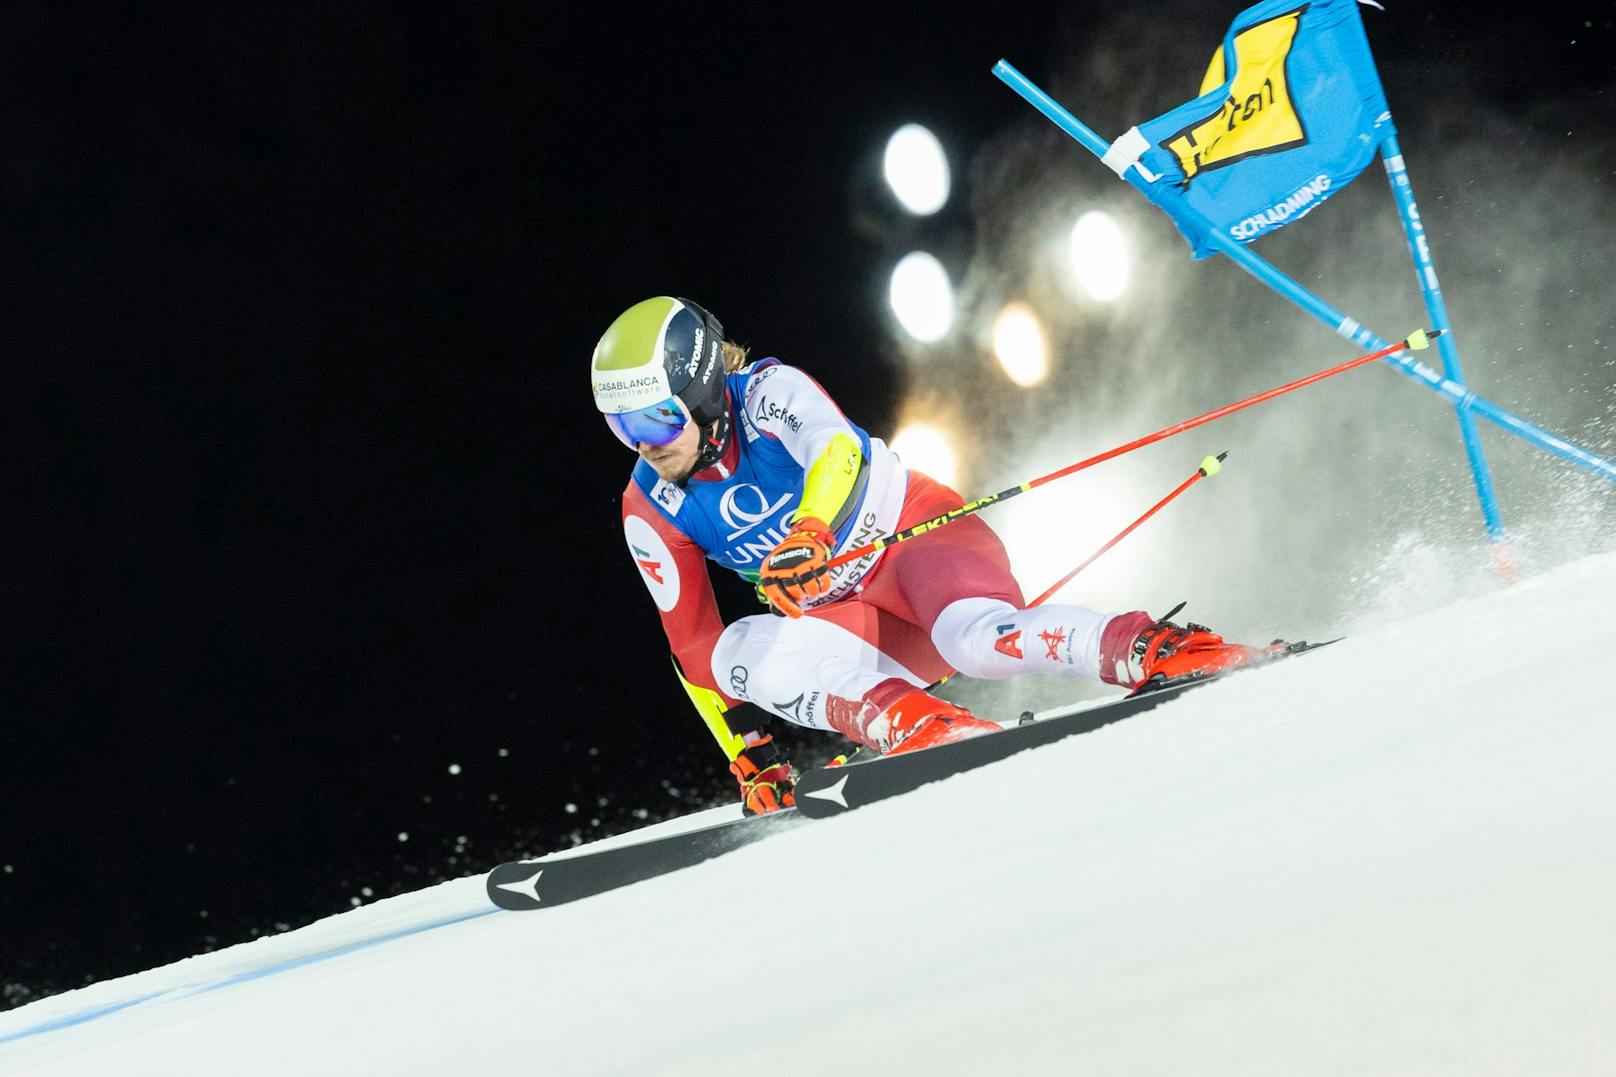 Der Schweizer Marco Odermatt war im Riesentorlauf in Schladming wieder einmal die Nummer eins. Von Platz elf im ersten Durchgang raste der Weltcup-Leader zum Sieg, fing Manuel Feller ab. Der ÖSV-Star wurde vor über 20.000 Ski-Fans Zweiter.